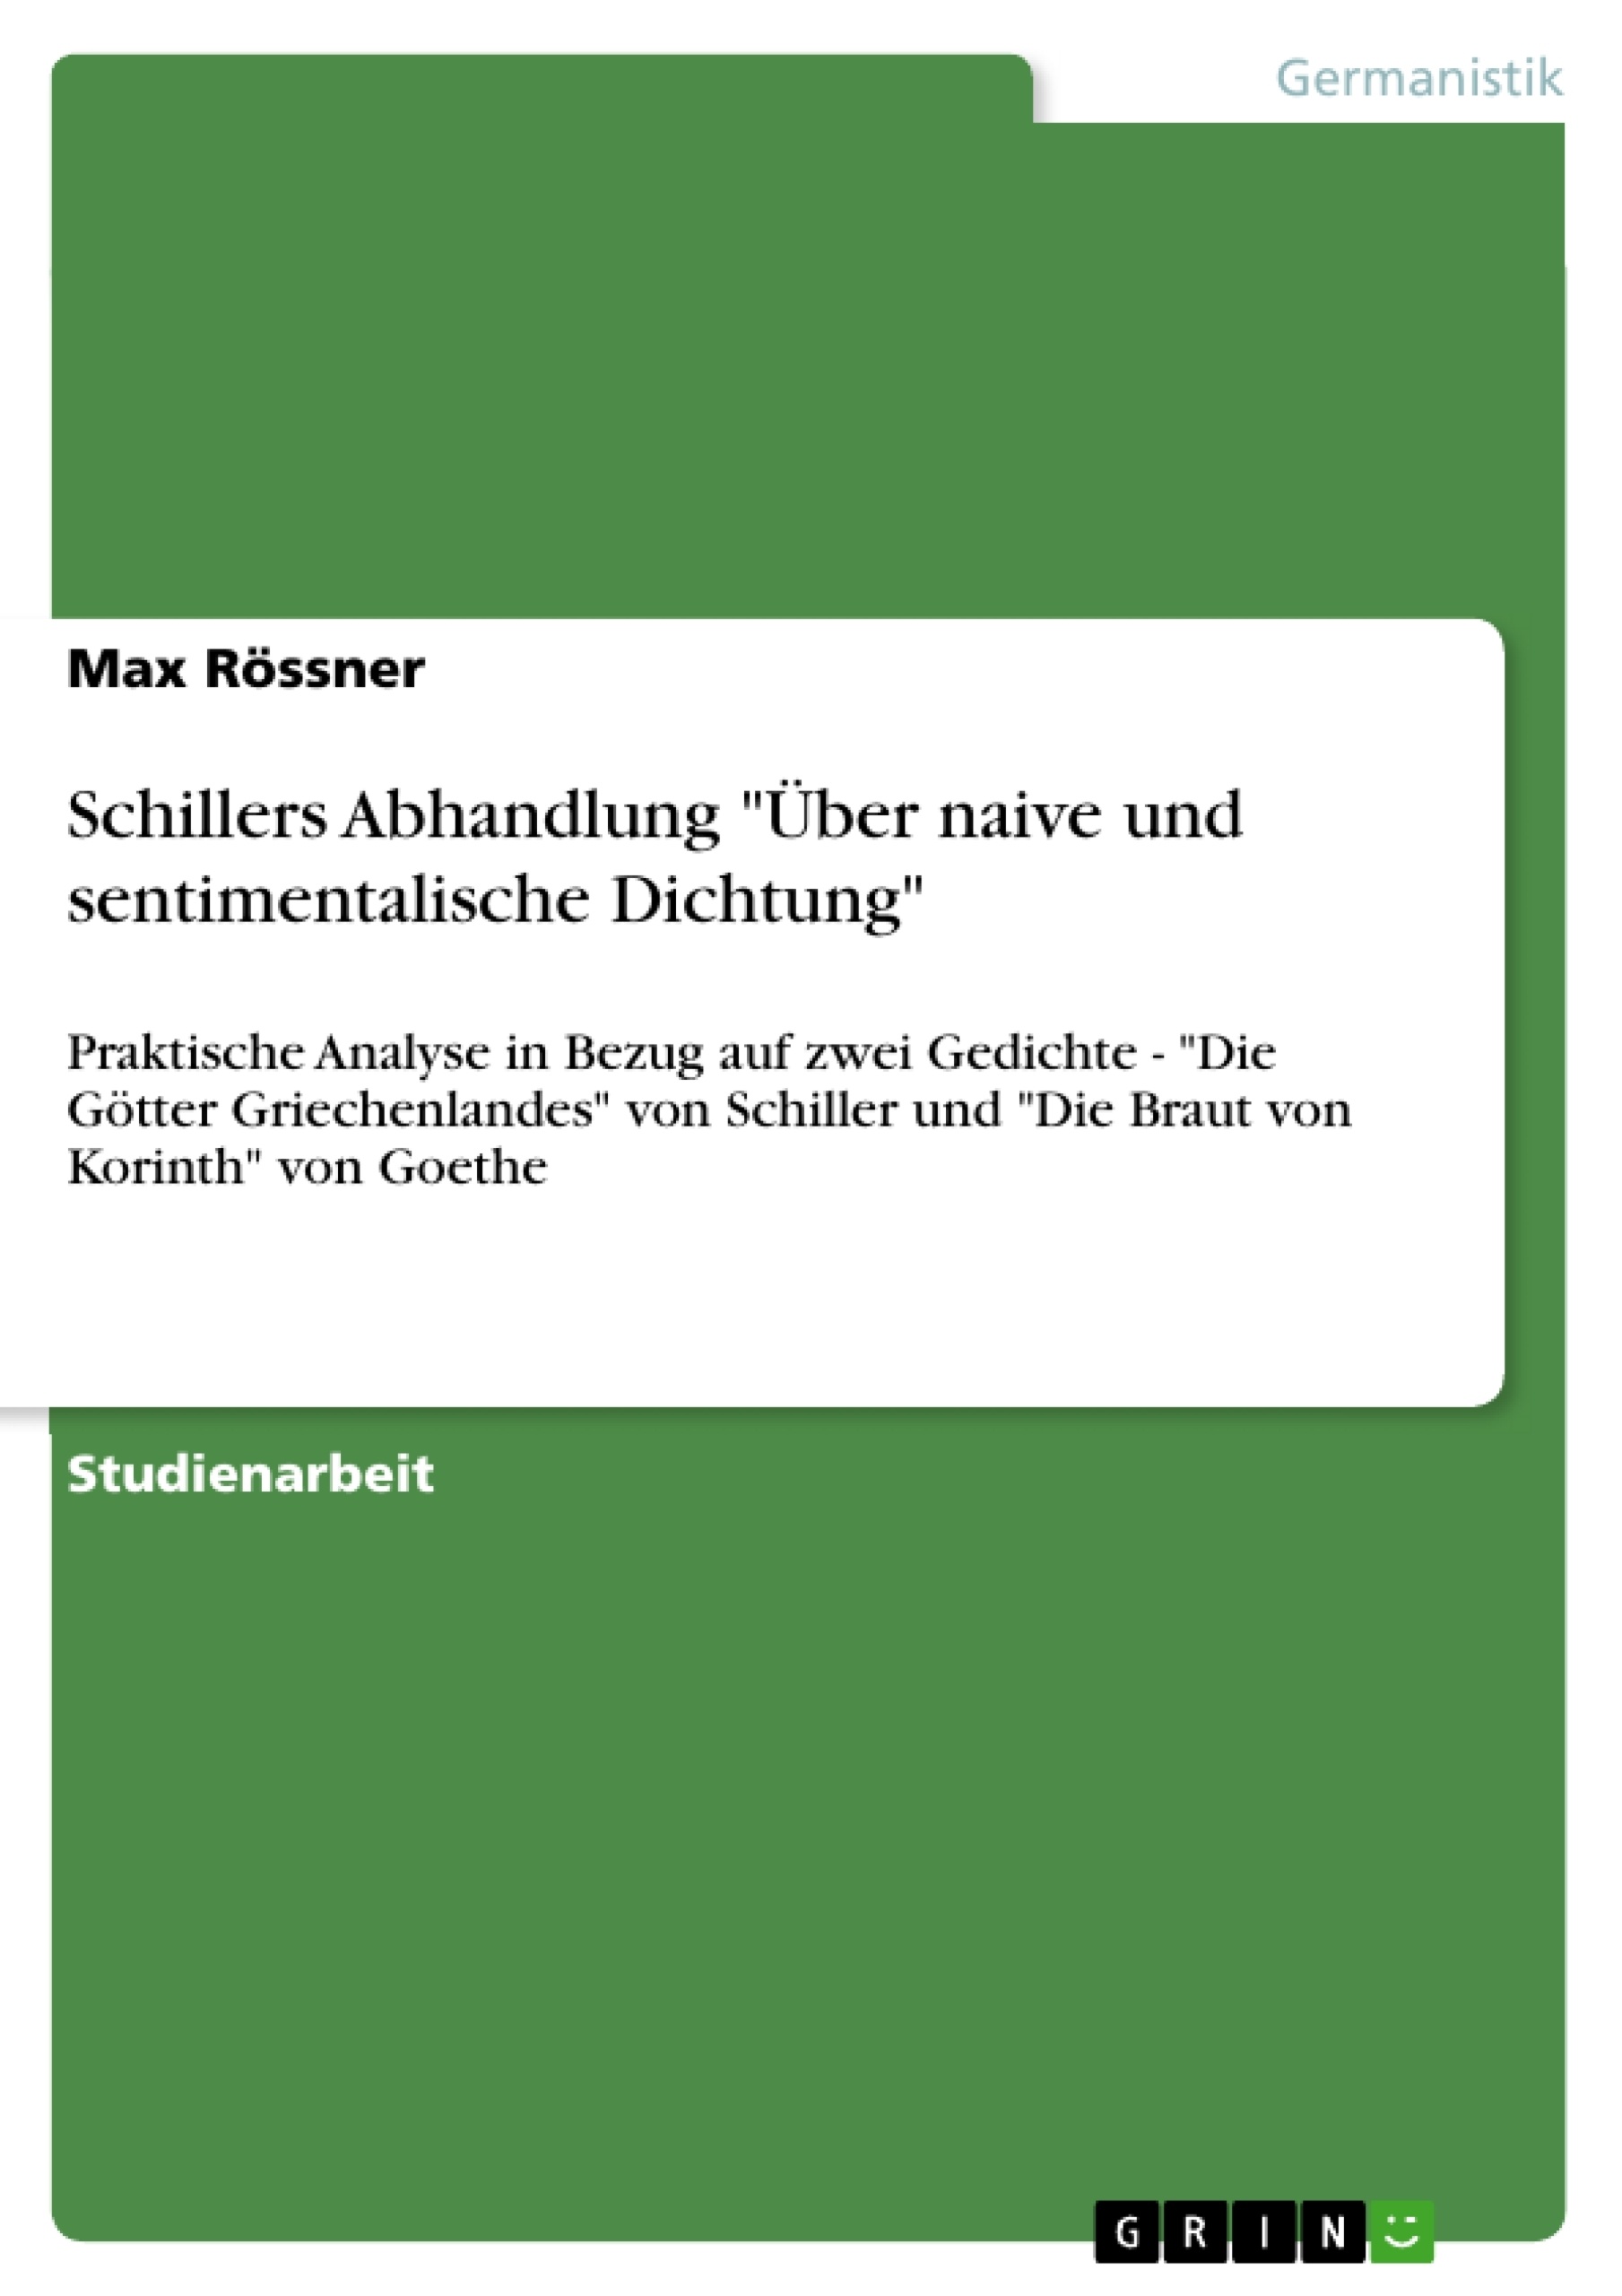 Título: Schillers Abhandlung "Über naive und sentimentalische Dichtung"